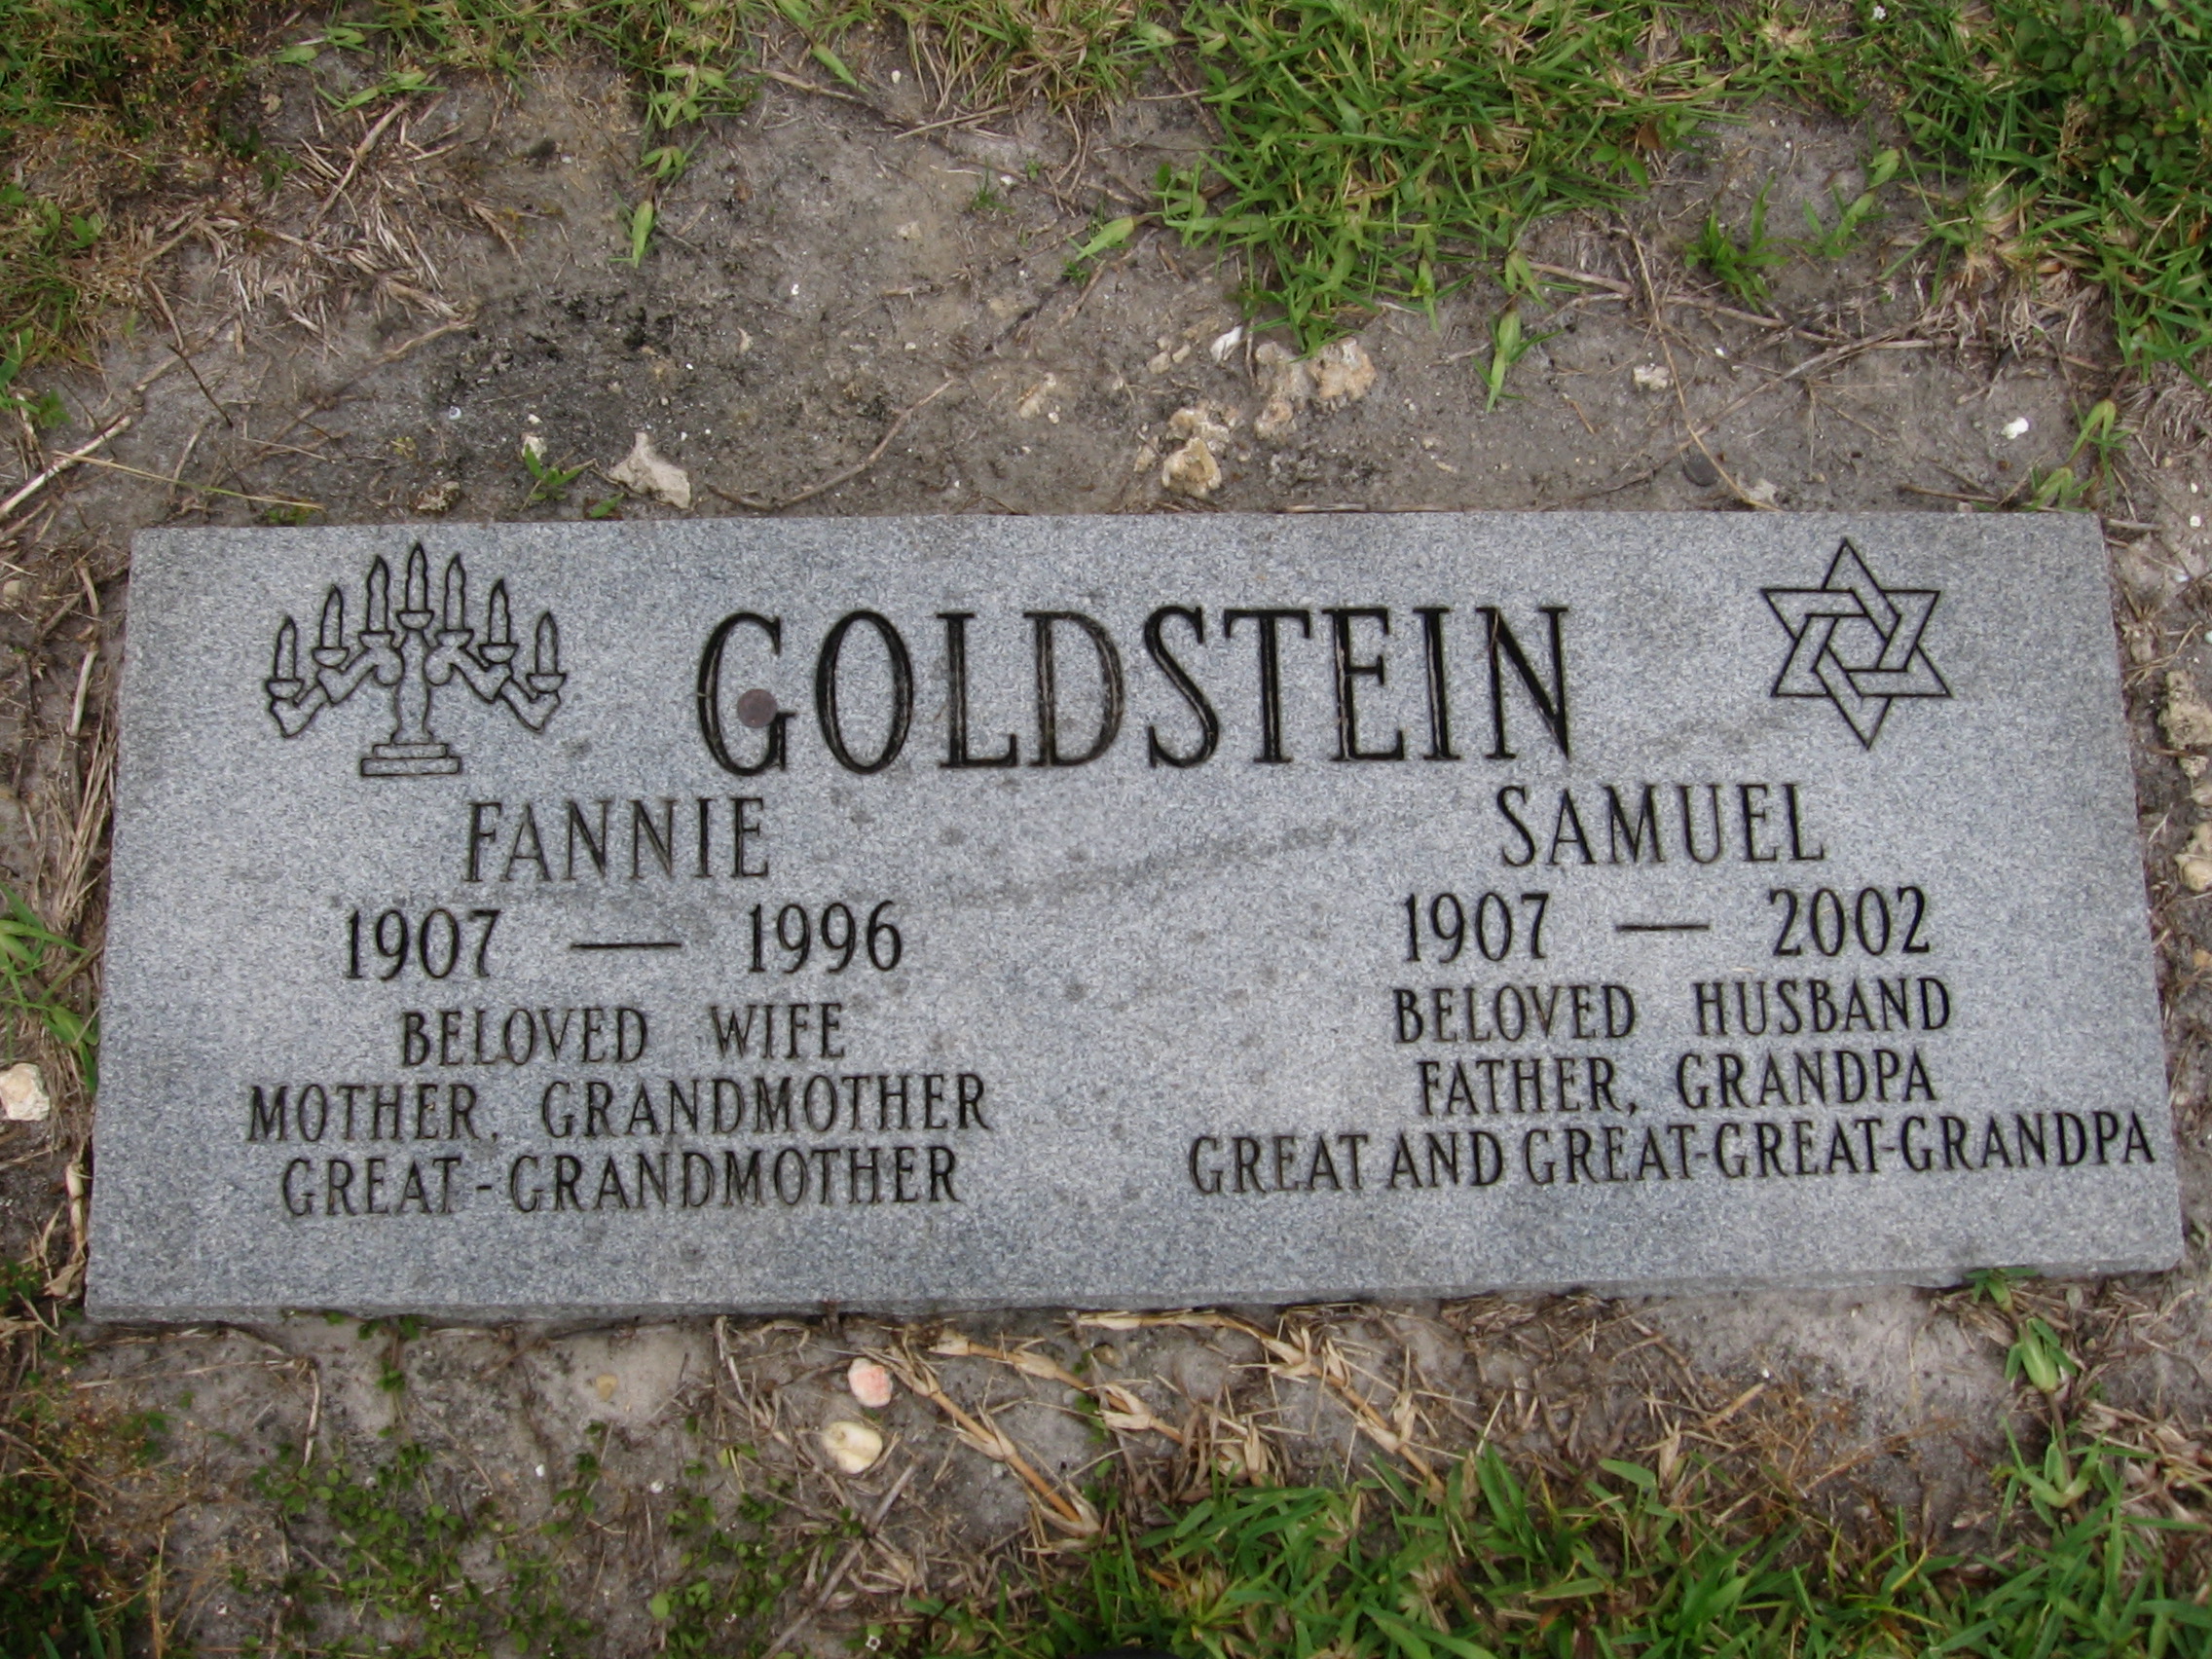 Fannie Goldstein